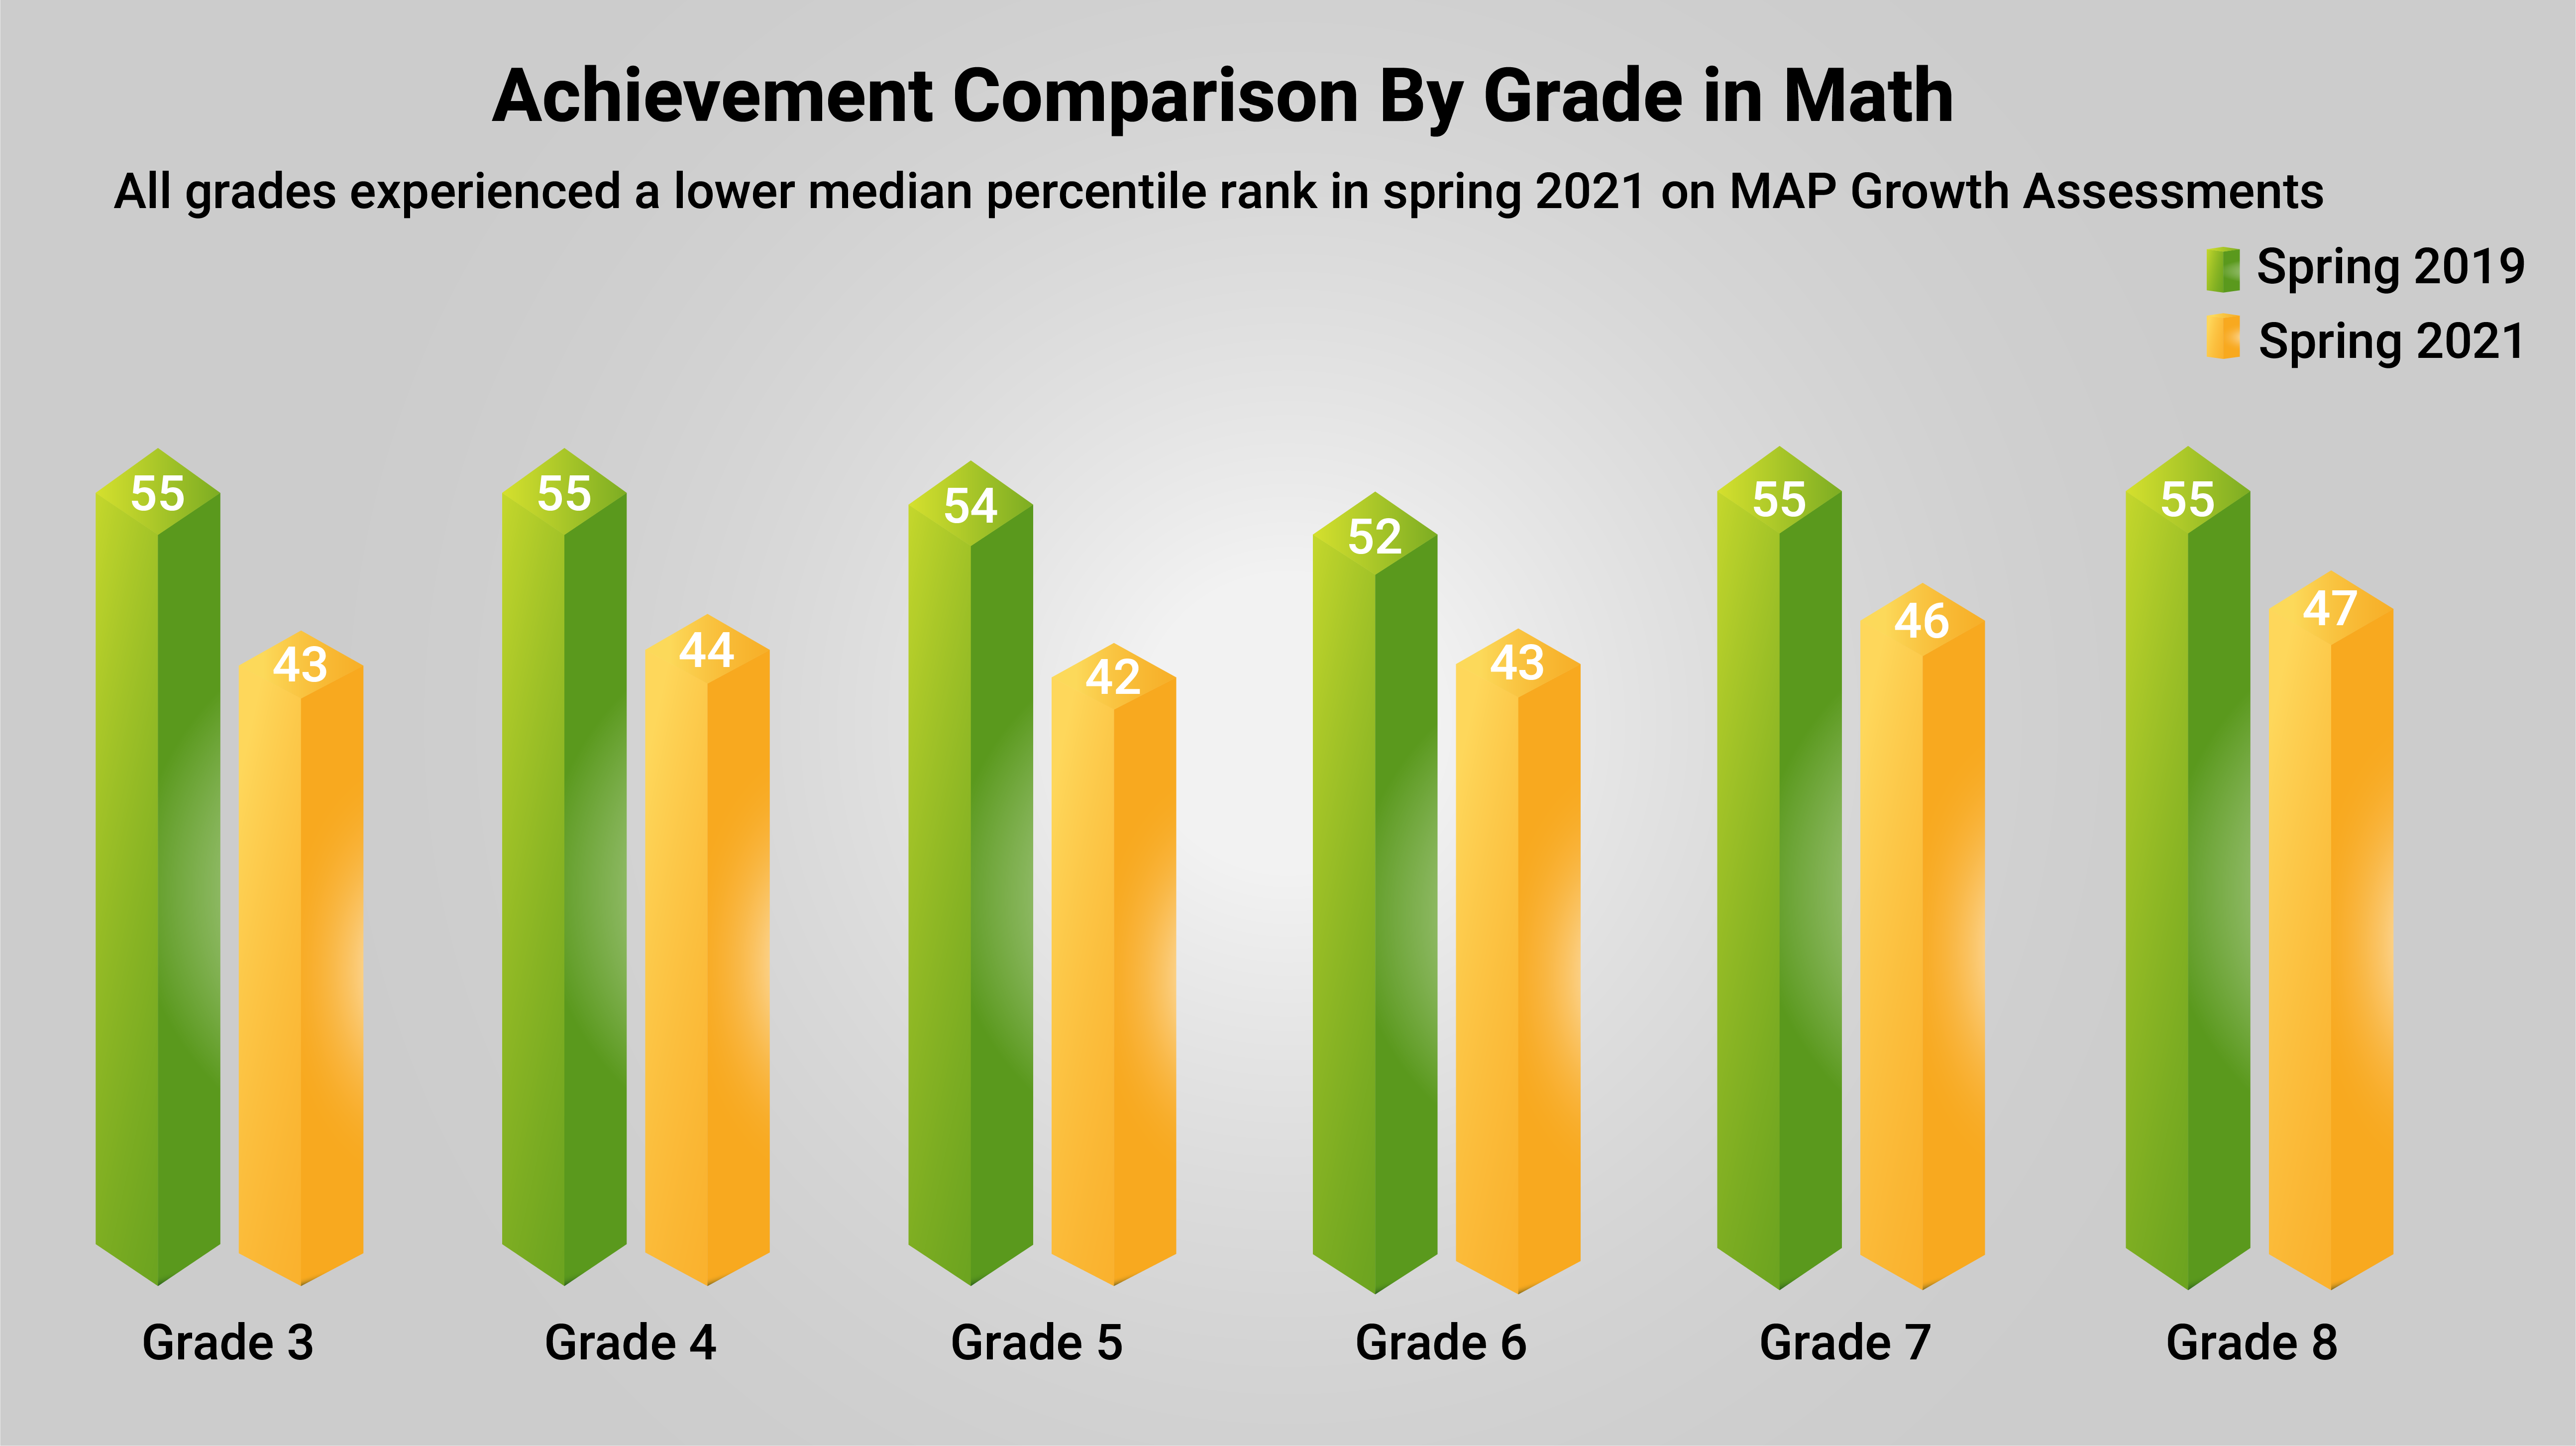 Achievement Comparison by Grade in Math